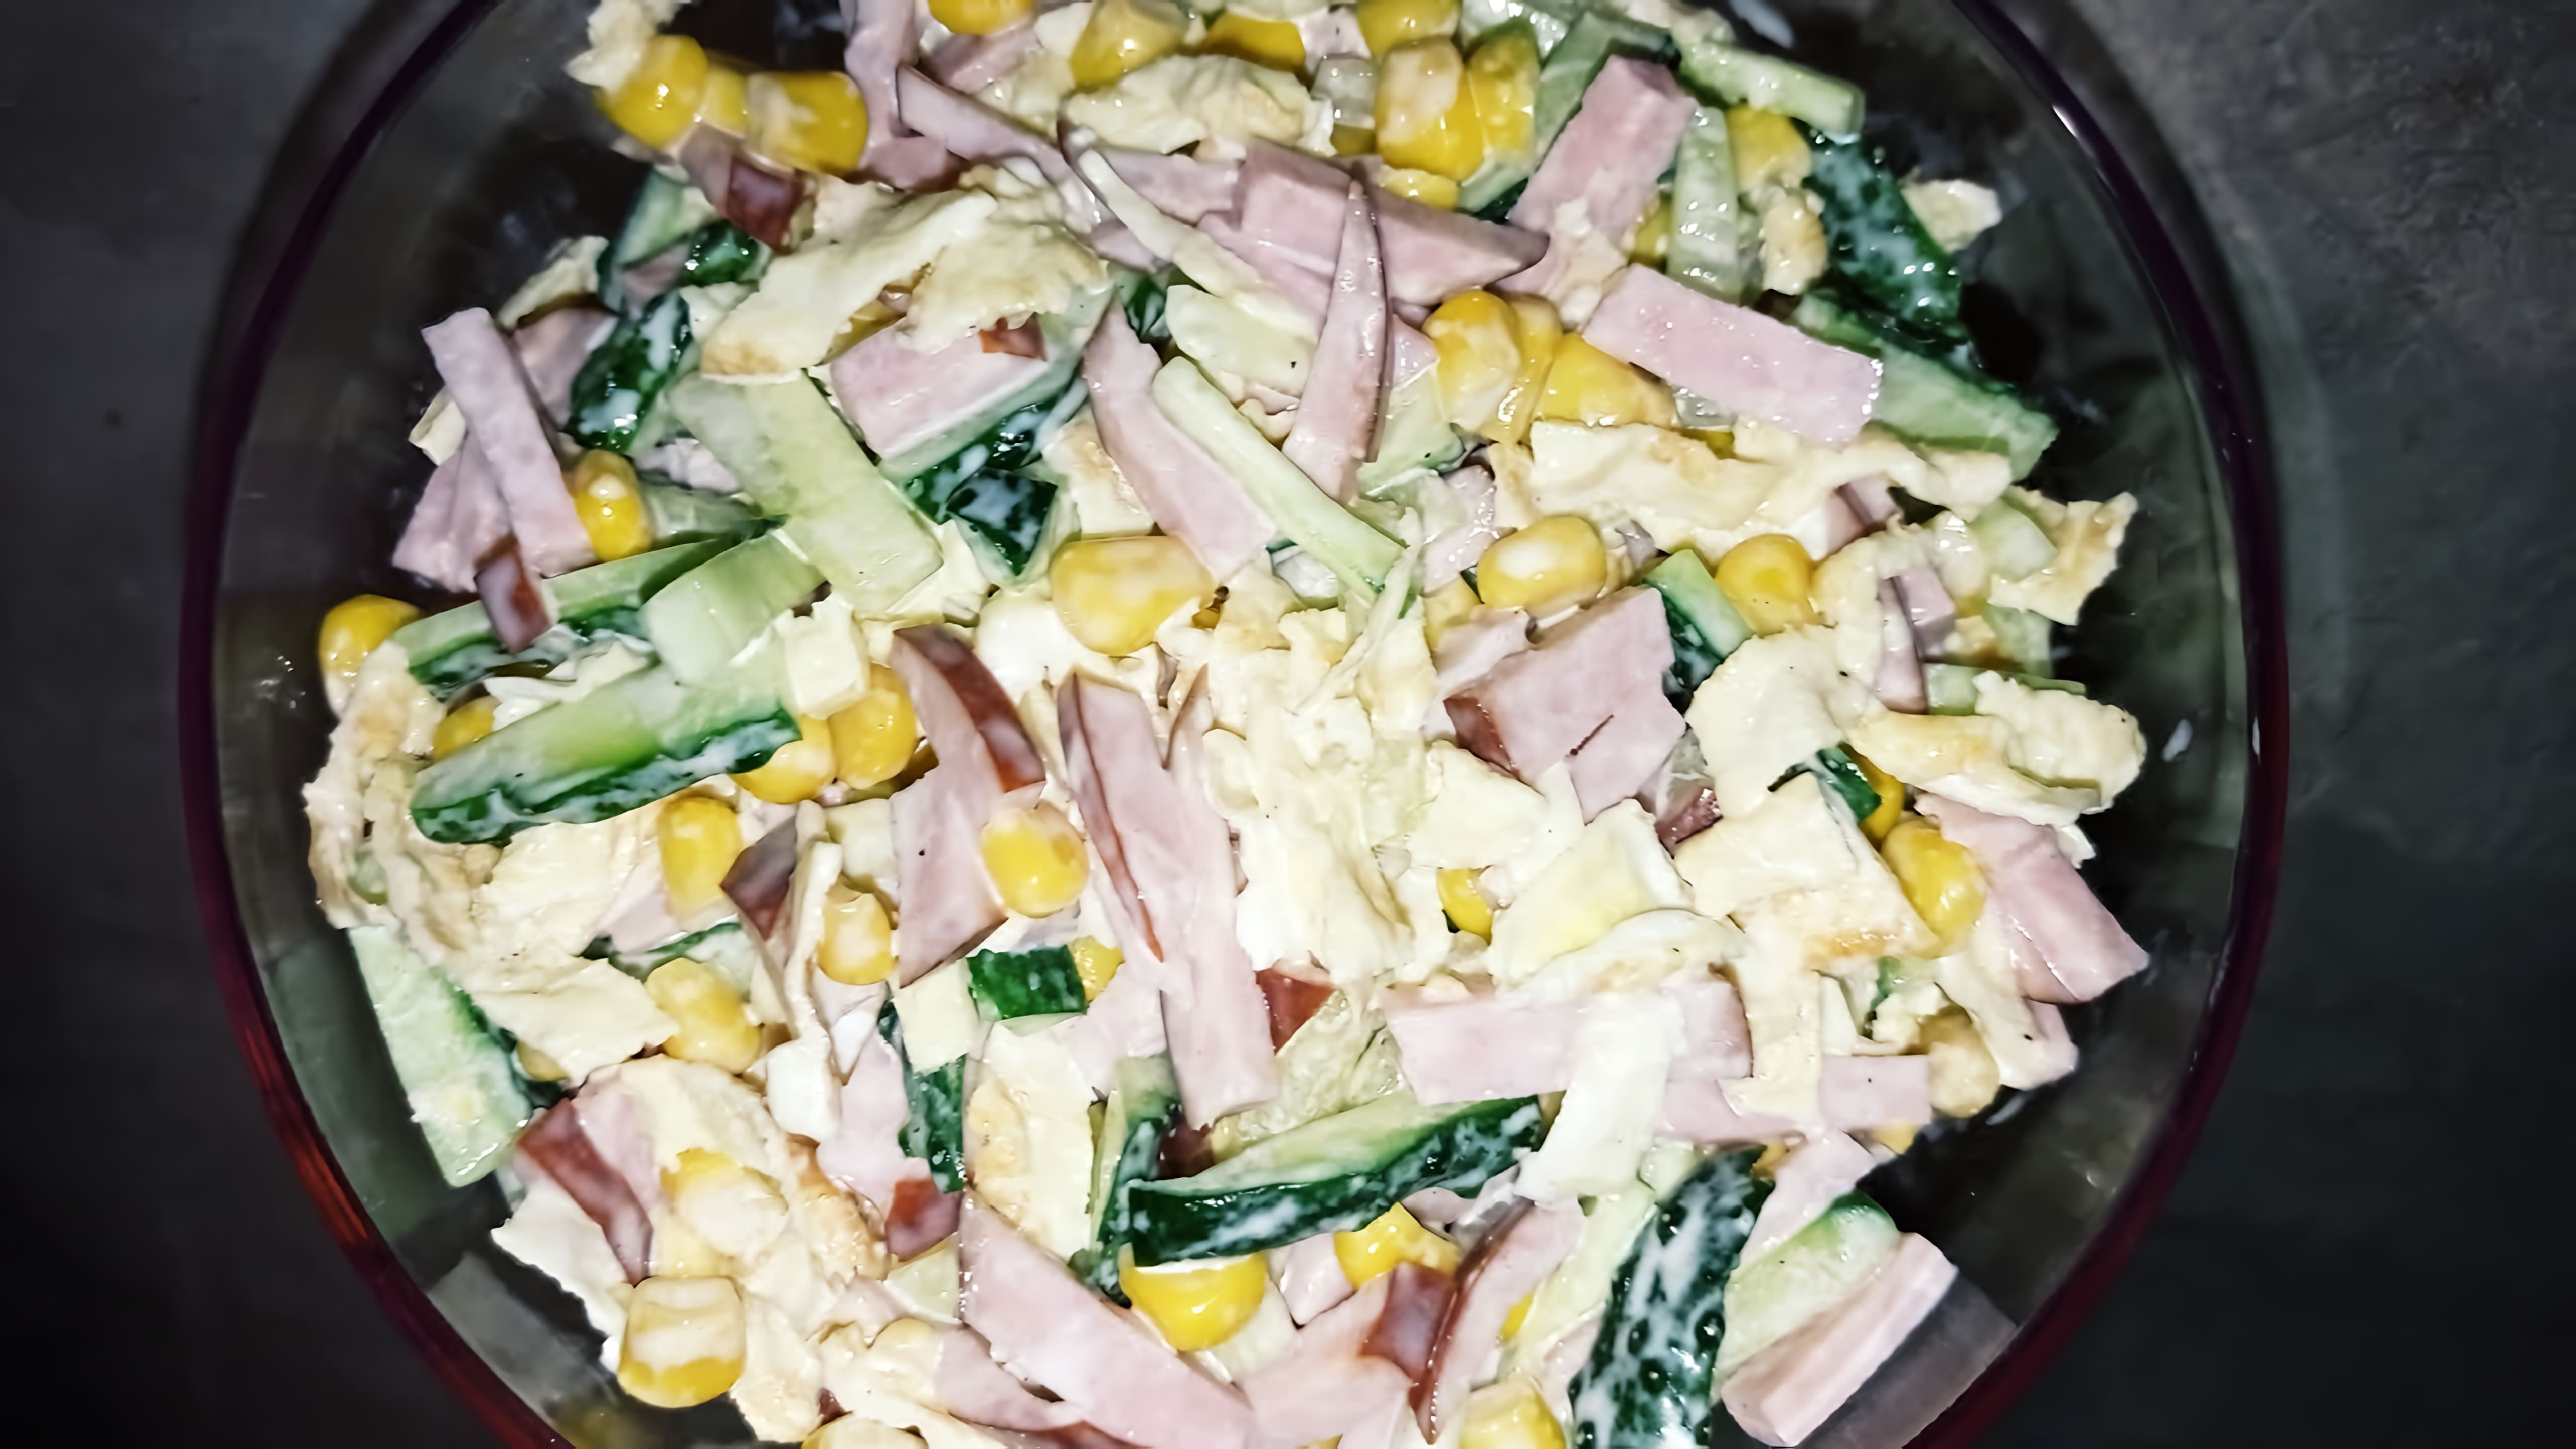 Видео рецепт праздничного салата, который можно приготовить всего из четырех ингредиентов - копченой колбасы, консервированной кукурузы, свежего огурца и сметаны